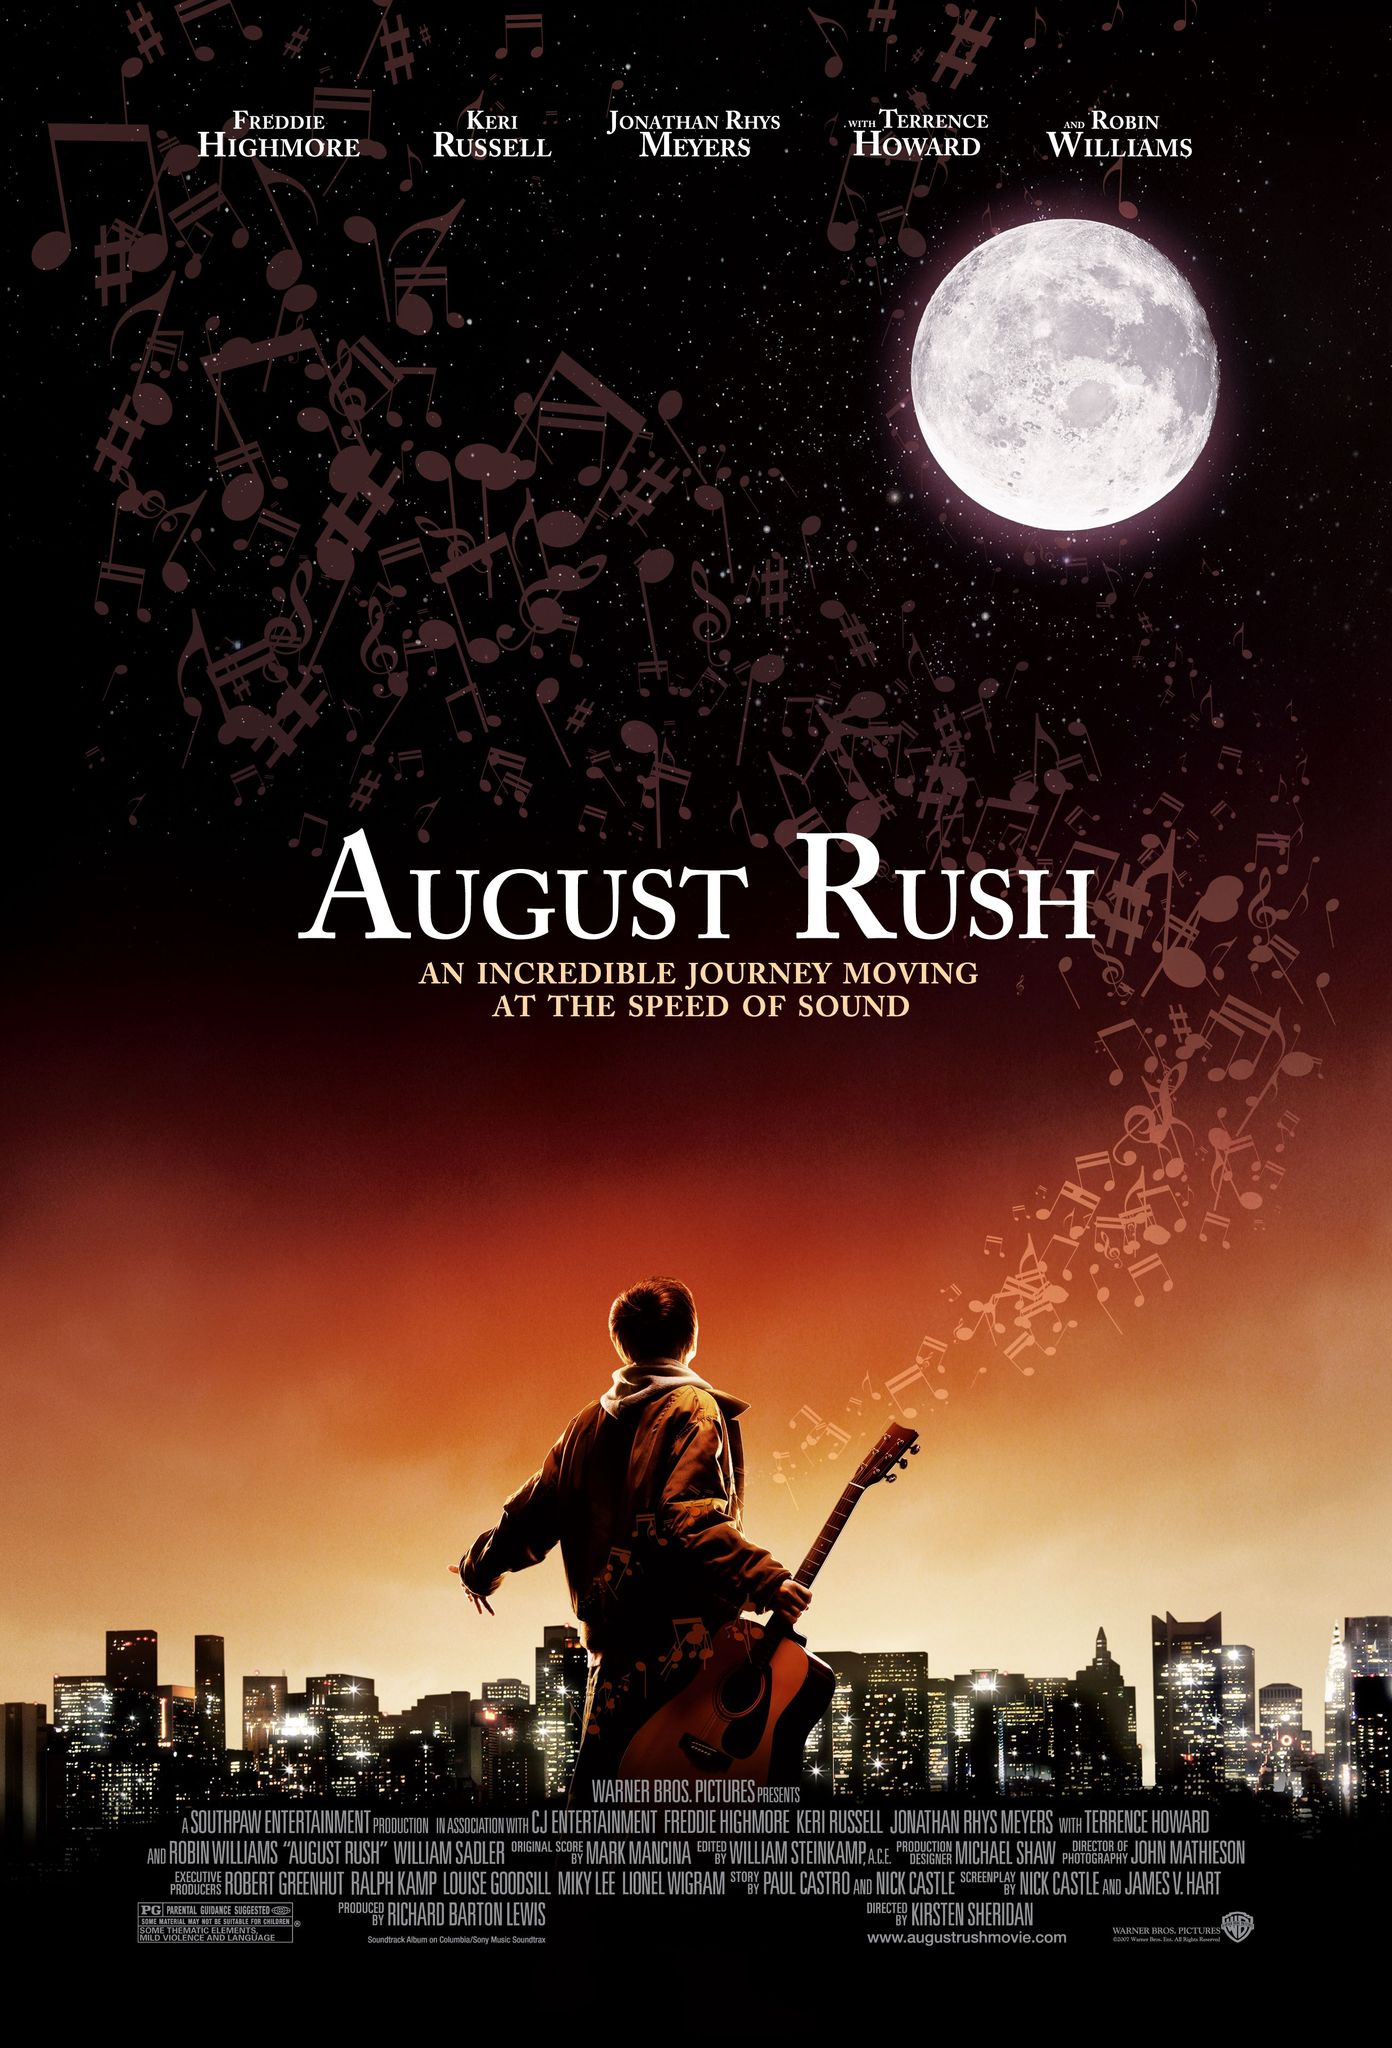 August Rush (2007) ทั้งชีวิตขอมีแต่เสียงเพลง